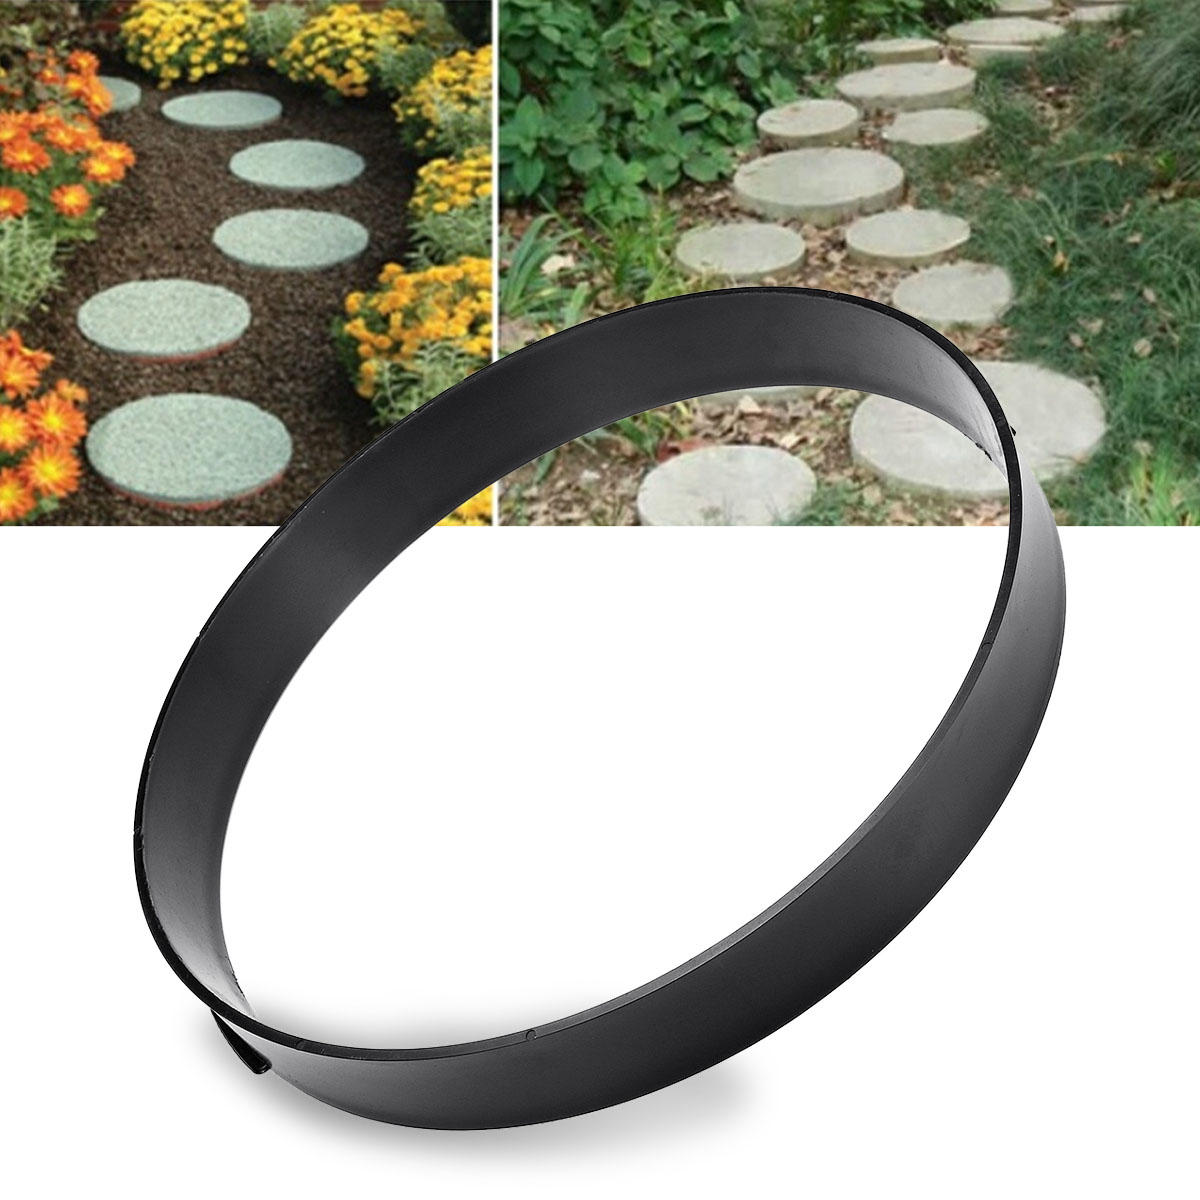 35x35cm round plastic diy concrete paving mould garden pavement mold